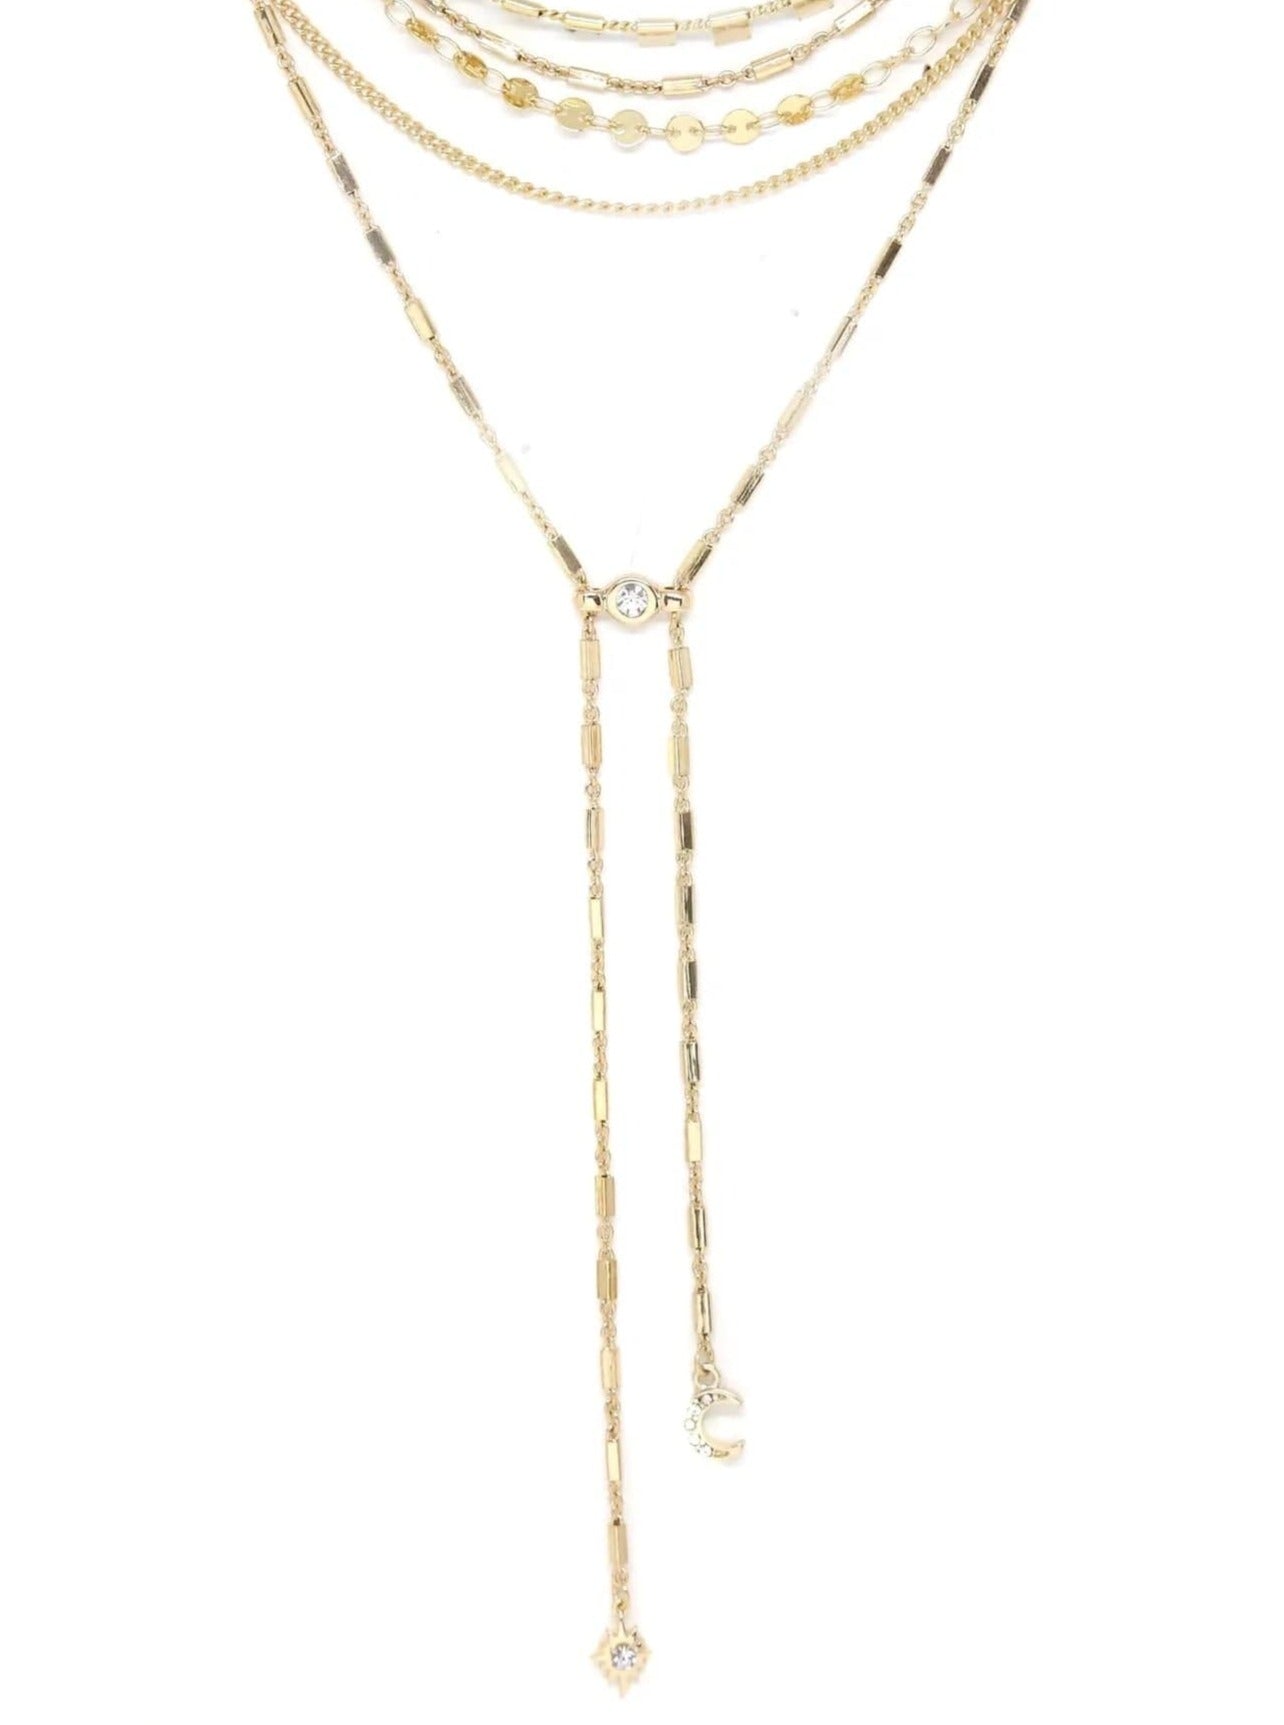 ettika necklace 18k GOLD MULTI-CHAIN LAYERED // NECKLACE